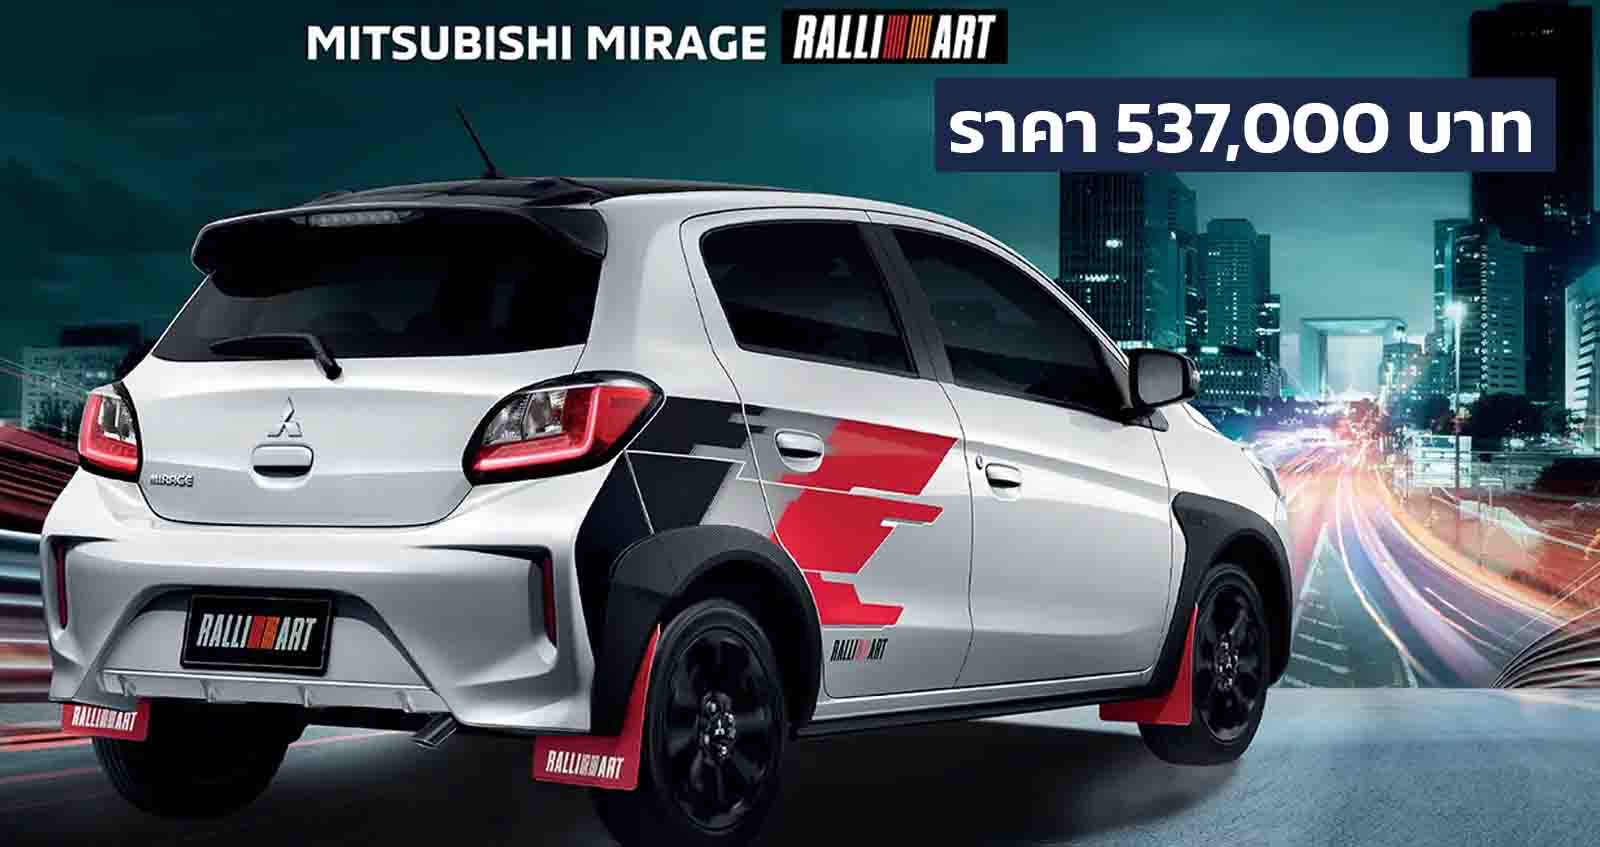 Mitsubishi Mirage RALLIART ราคา 537,000 บาท พร้อมจิตวิญญาณมอเตอร์สปอร์ต ตารางผ่อนดาวน์